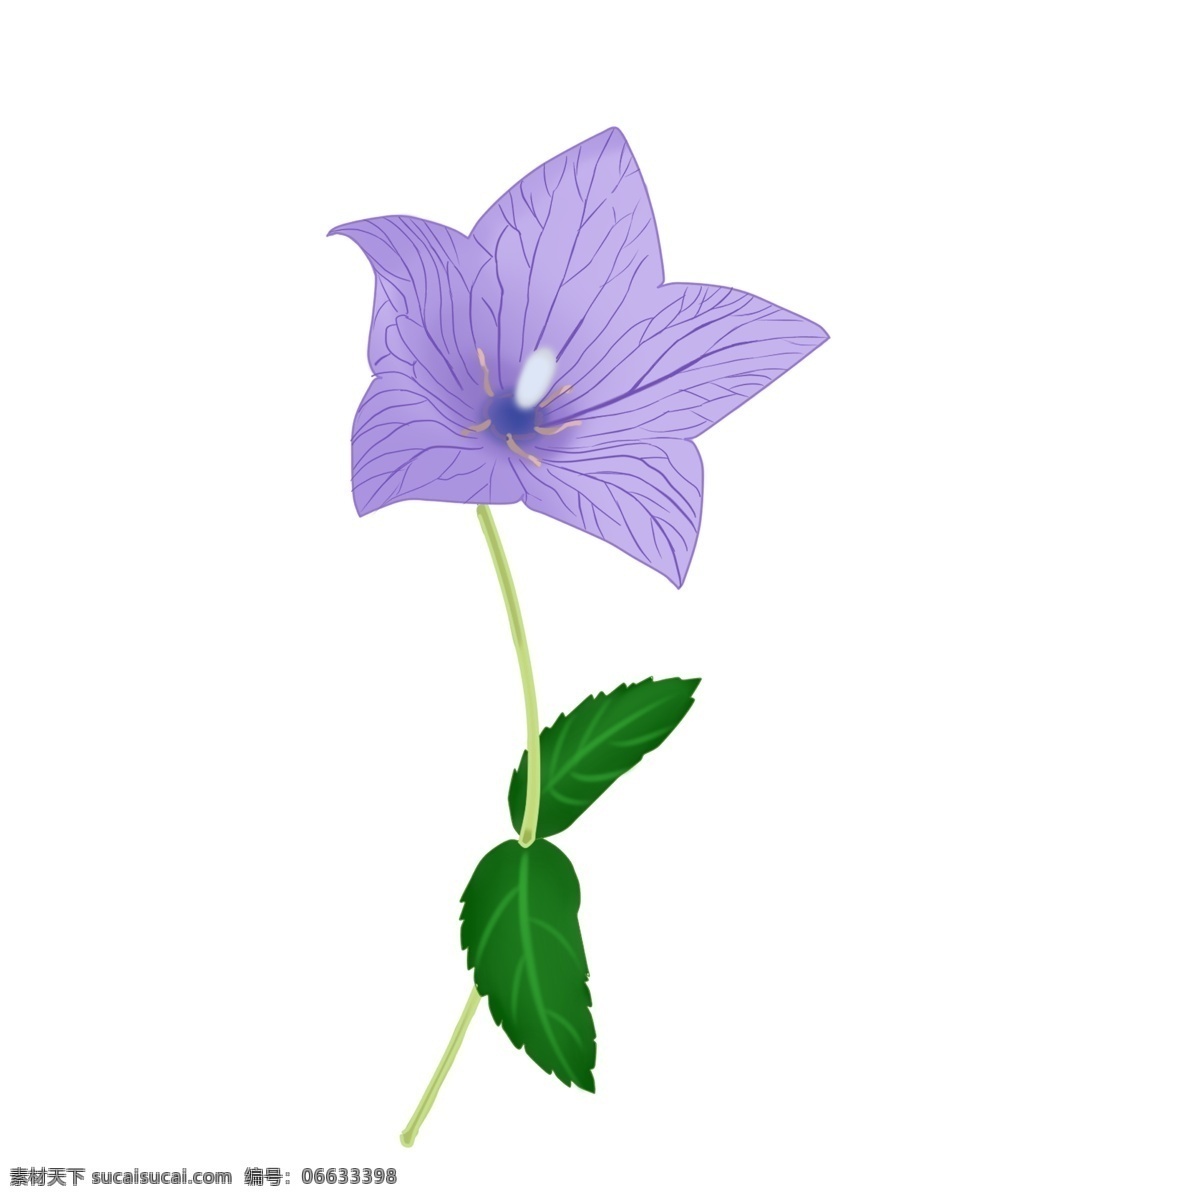 手绘 花 桔梗 紫色 植物 花朵 手绘花 手绘植物 桔梗花 紫色桔梗